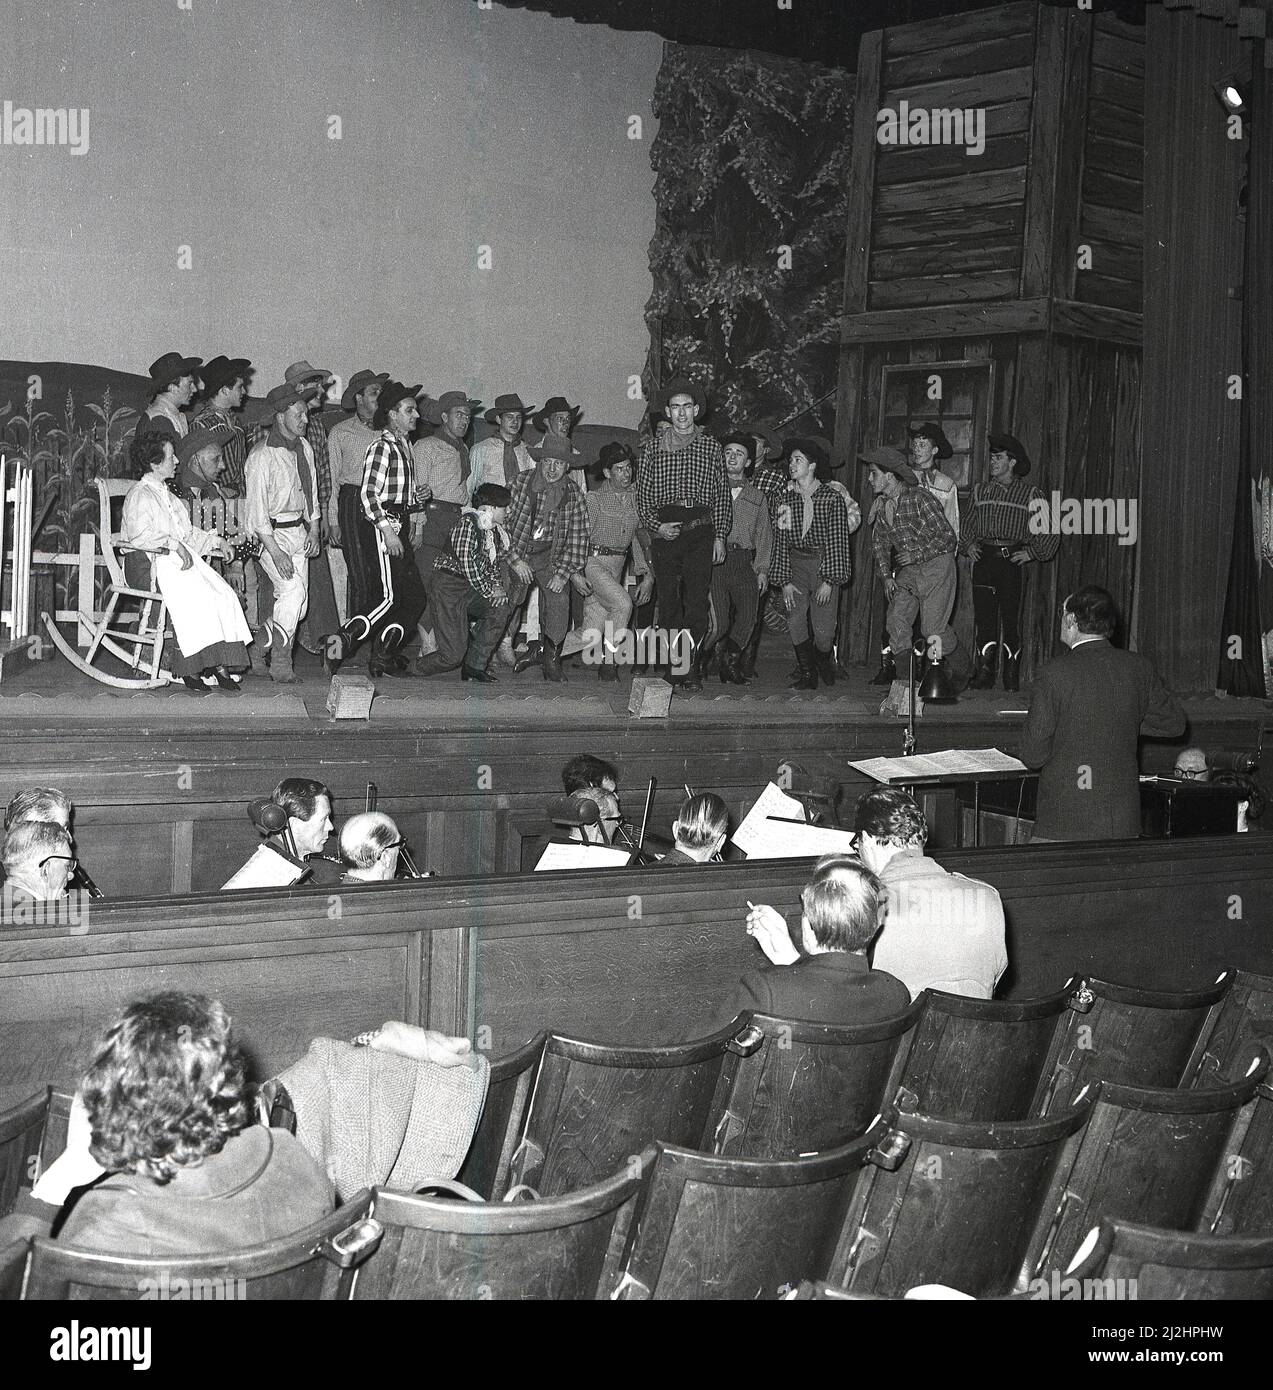 1960s, historische, große Gruppe von Schauspielern auf einer Bühne während einer Aufführung des amerikanischen Musicals Oklahoma, produziert von der Kelty Musical Association in der Carnegie Hall, Dufermline, Fife, Schottland, Großbritannien, Mit Orchester in der Grube. Oklahoma basiert auf dem Theaterstück „Green Grow The Lilacs“ aus dem Jahr 1931 und ist das erste Musical von Rodgers und Hammerstein, das 1943 am Broadway eröffnet wurde. Basierend auf den Romanzen eines einfachen Bauernmädchen ist das Musical eine beliebte Wahl für Schulen und Gemeinschaftsgruppen. Stockfoto